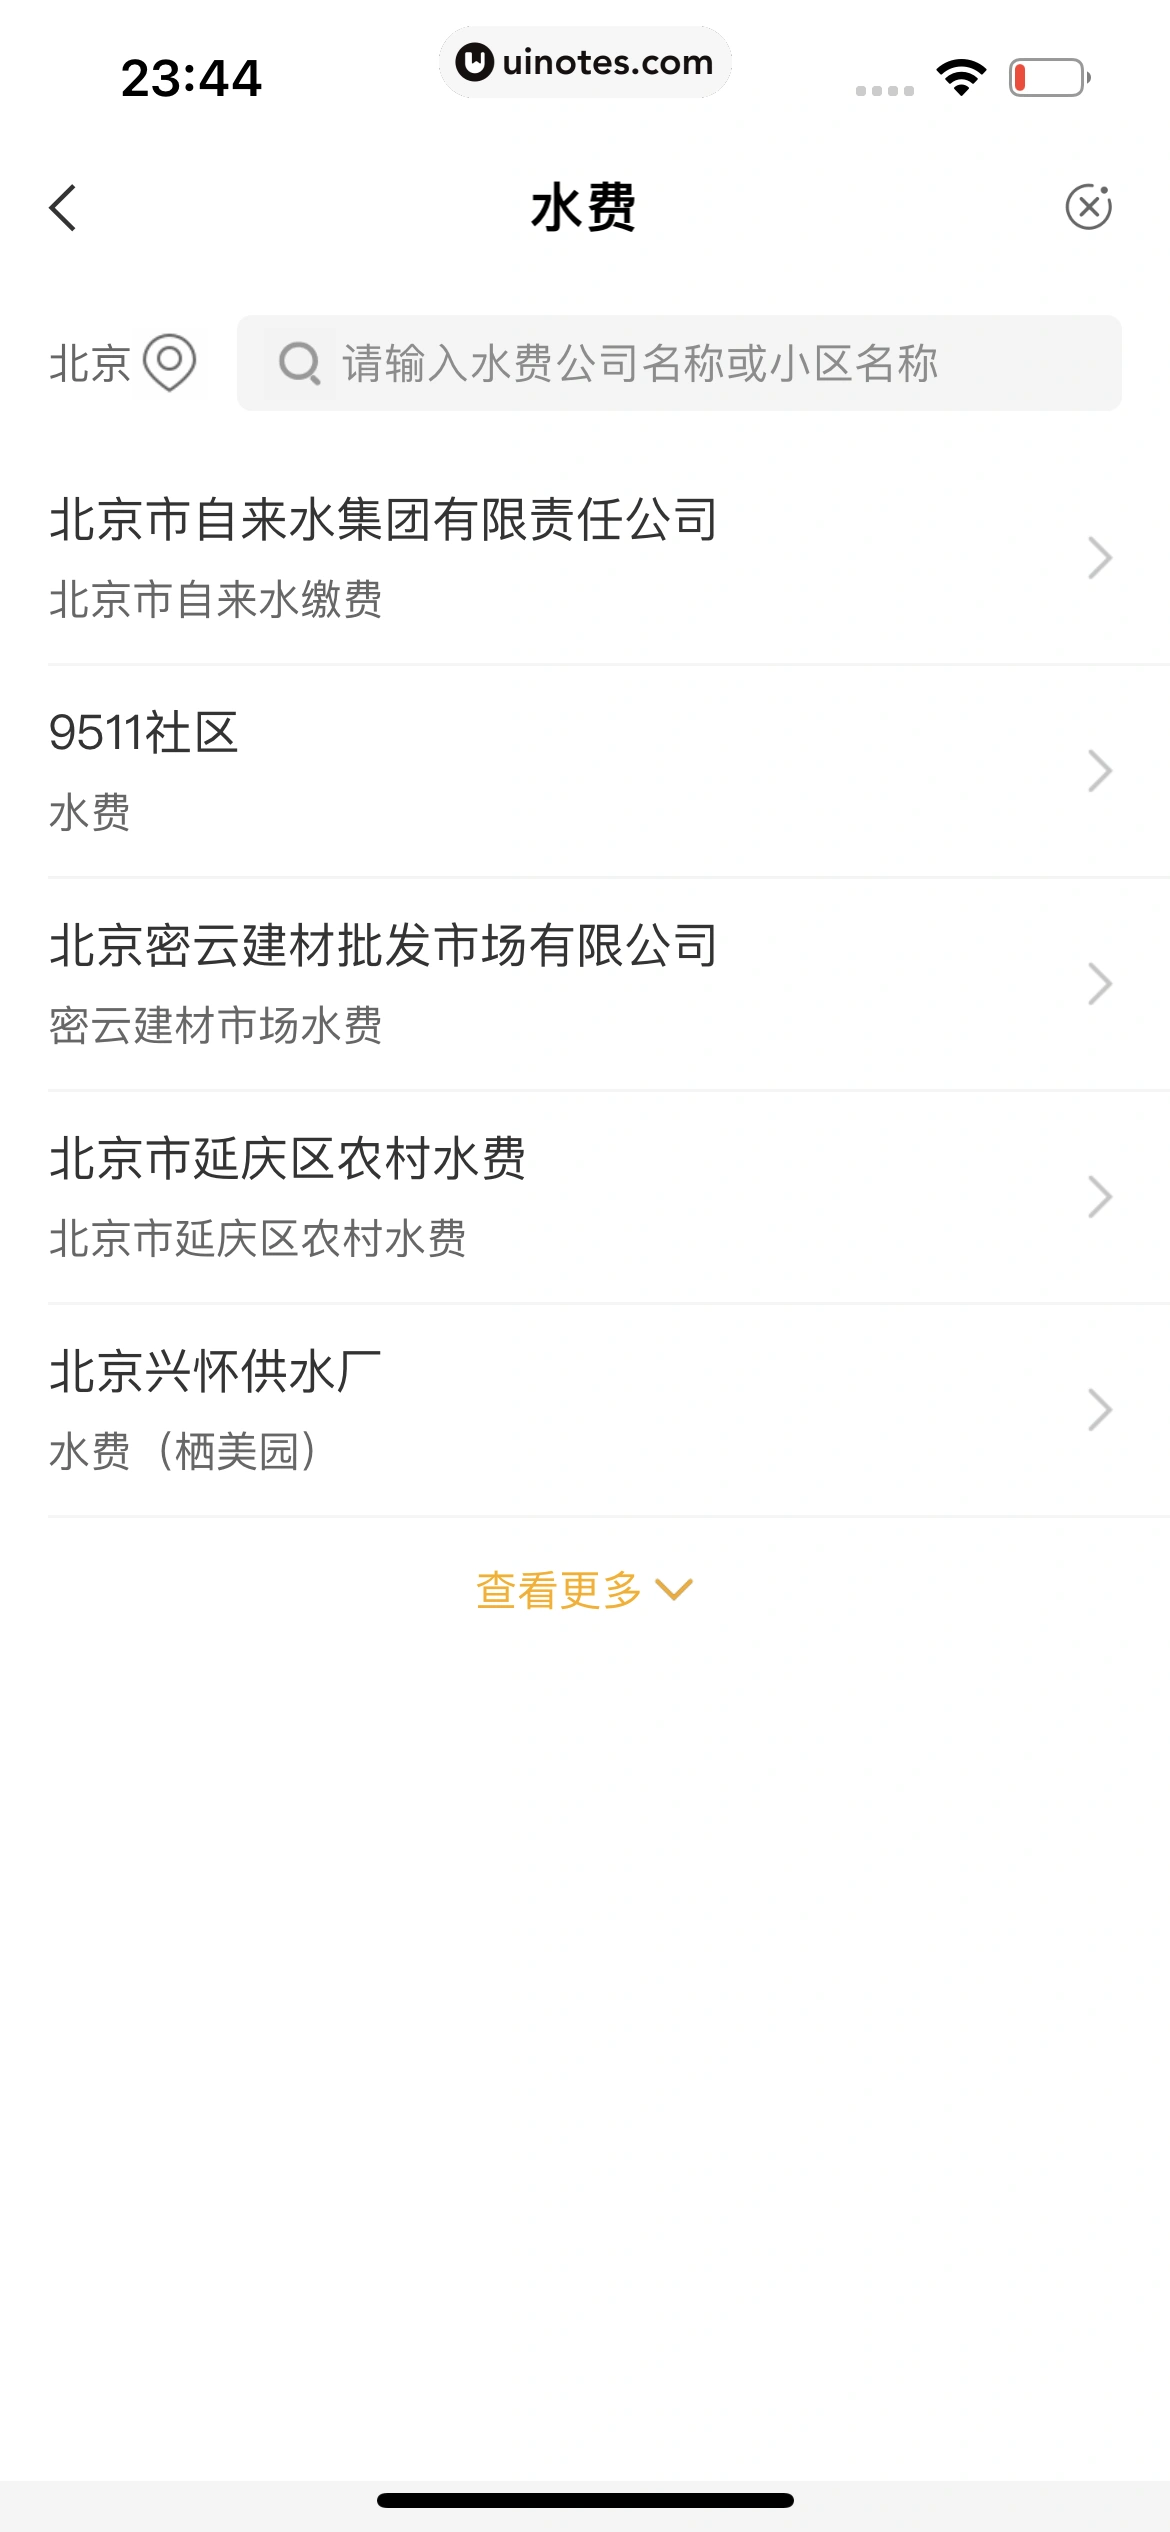 中国农业银行 App 截图 154 - UI Notes